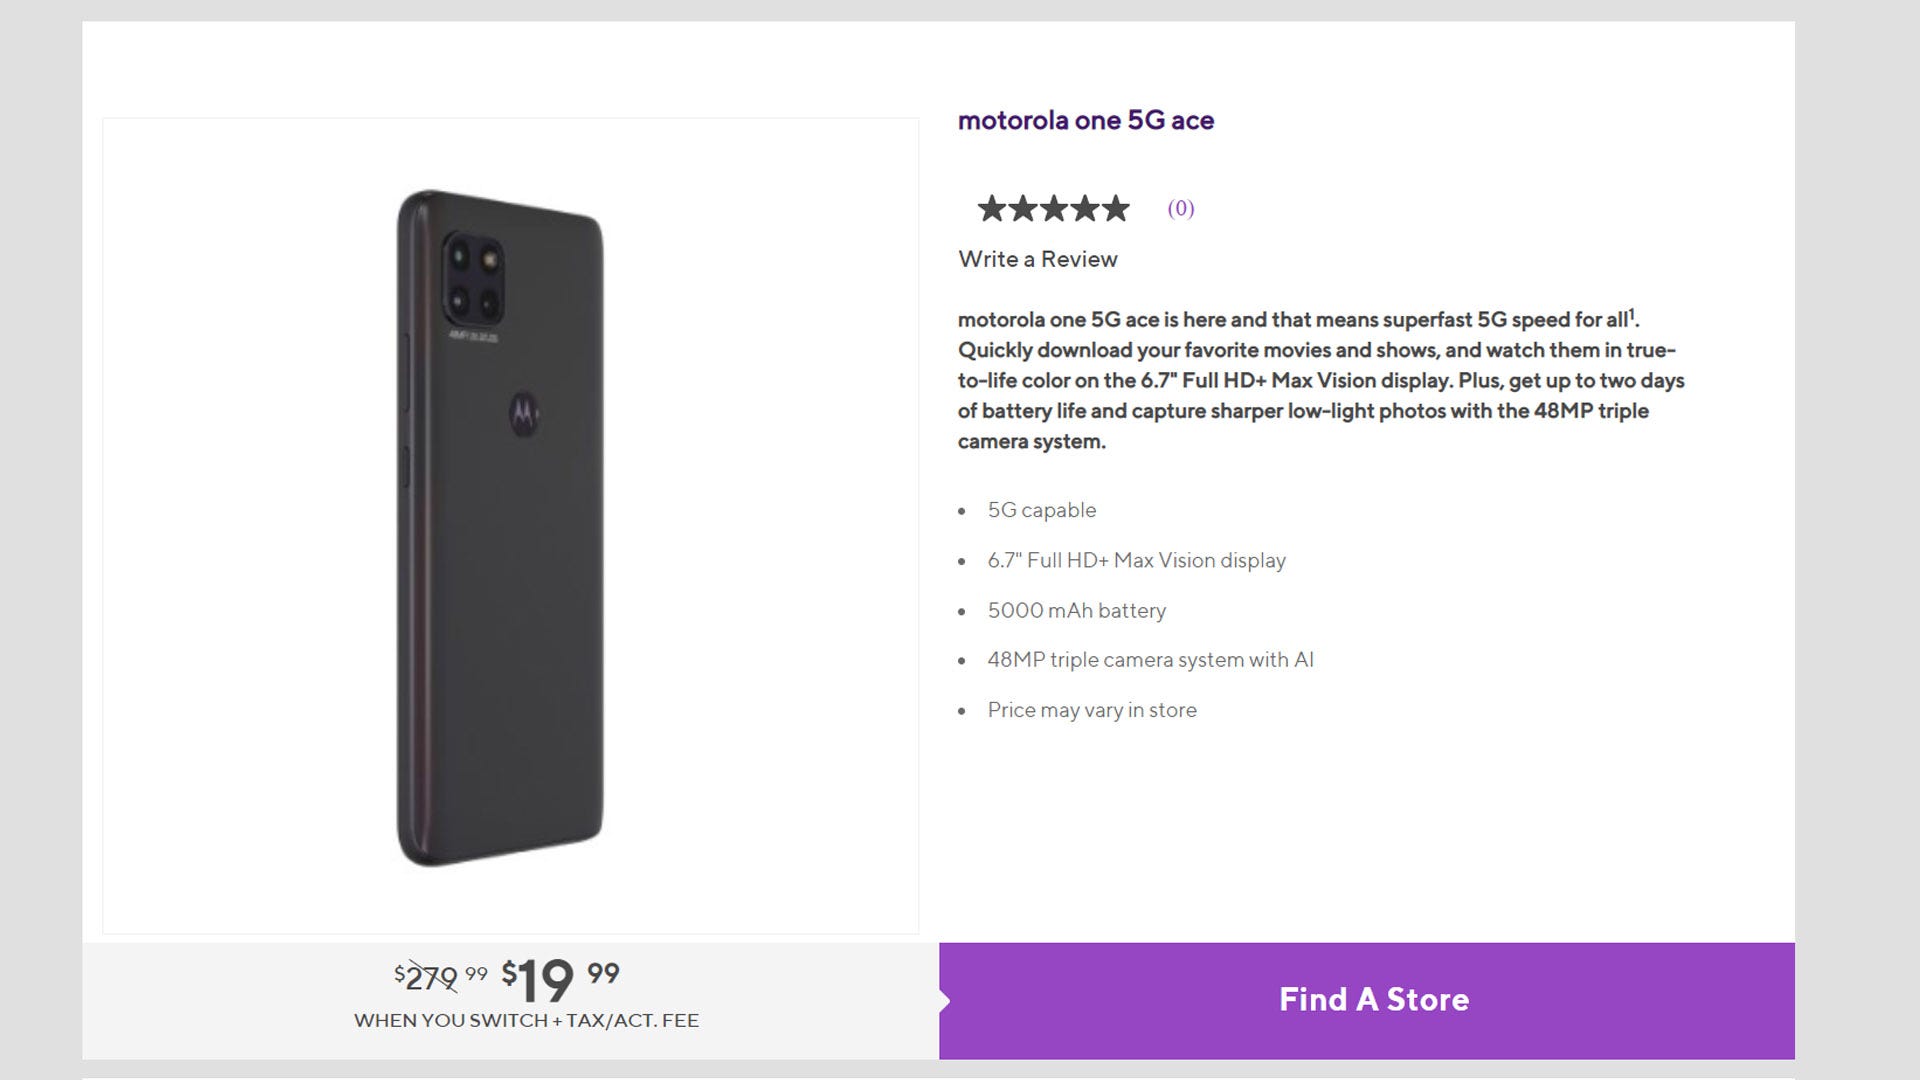 Chỉ 20 đô la: Switch đến Metro và nhận Motorola One 5G Ace với giá rẻ